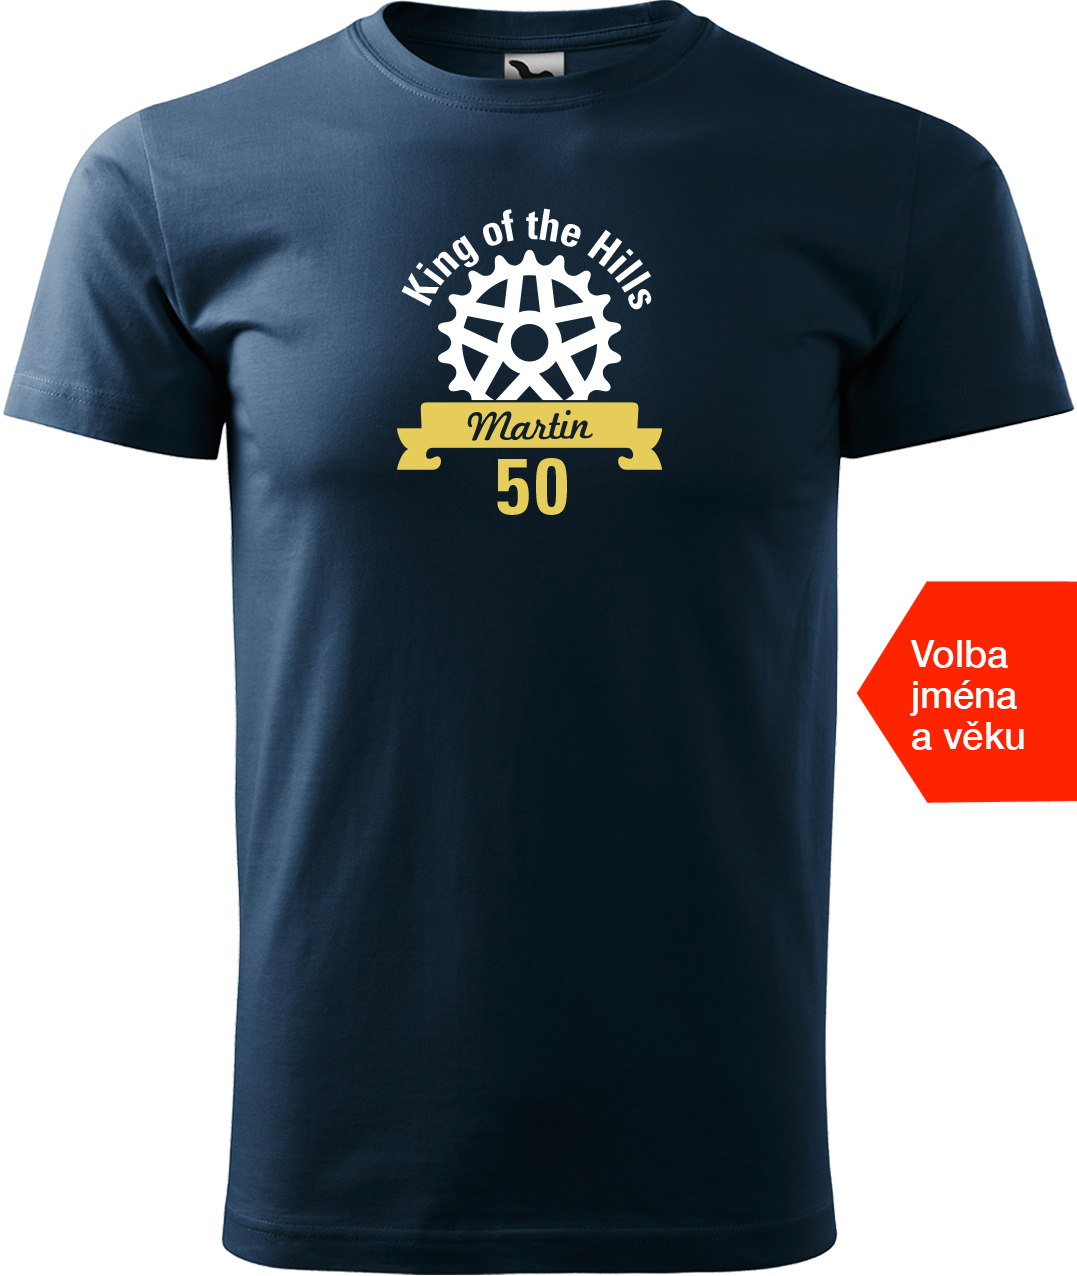 Pánské tričko pro cyklistu se jménem - King of the Hills Velikost: M, Barva: Námořní modrá (02)